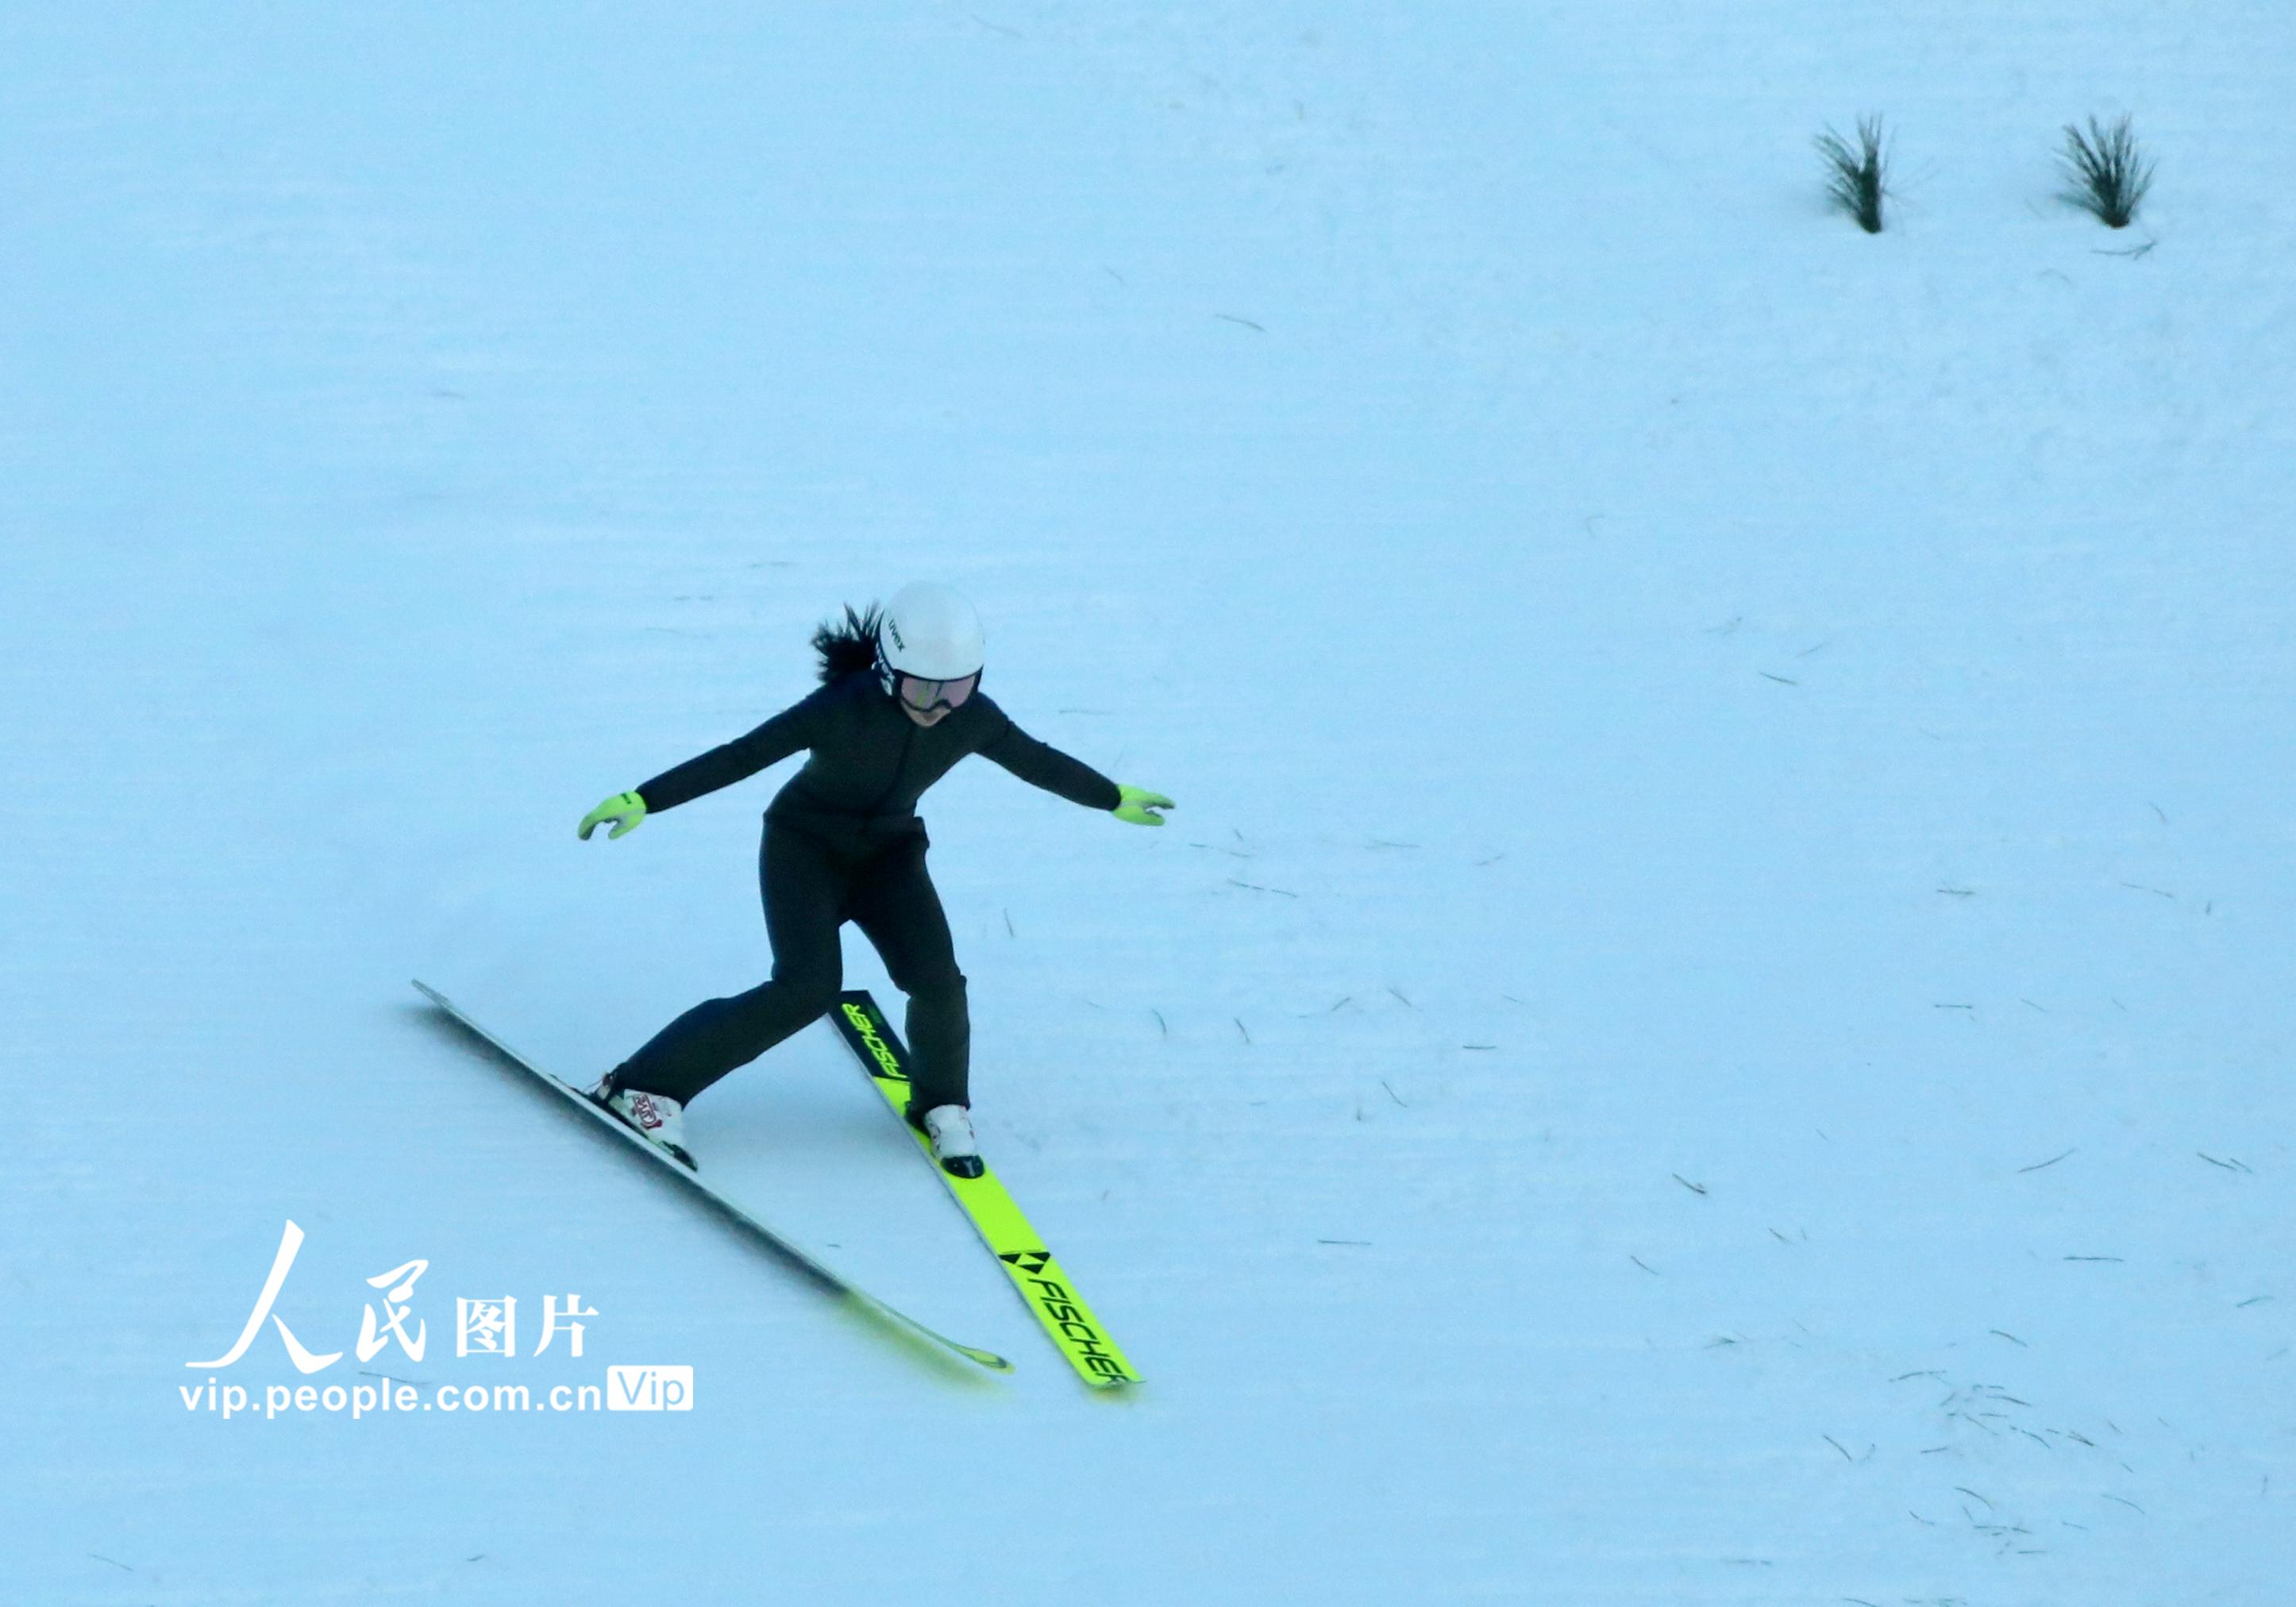 北京2022年冬奧會張家口賽區國家跳台滑雪中心迎來首日試滑【2】